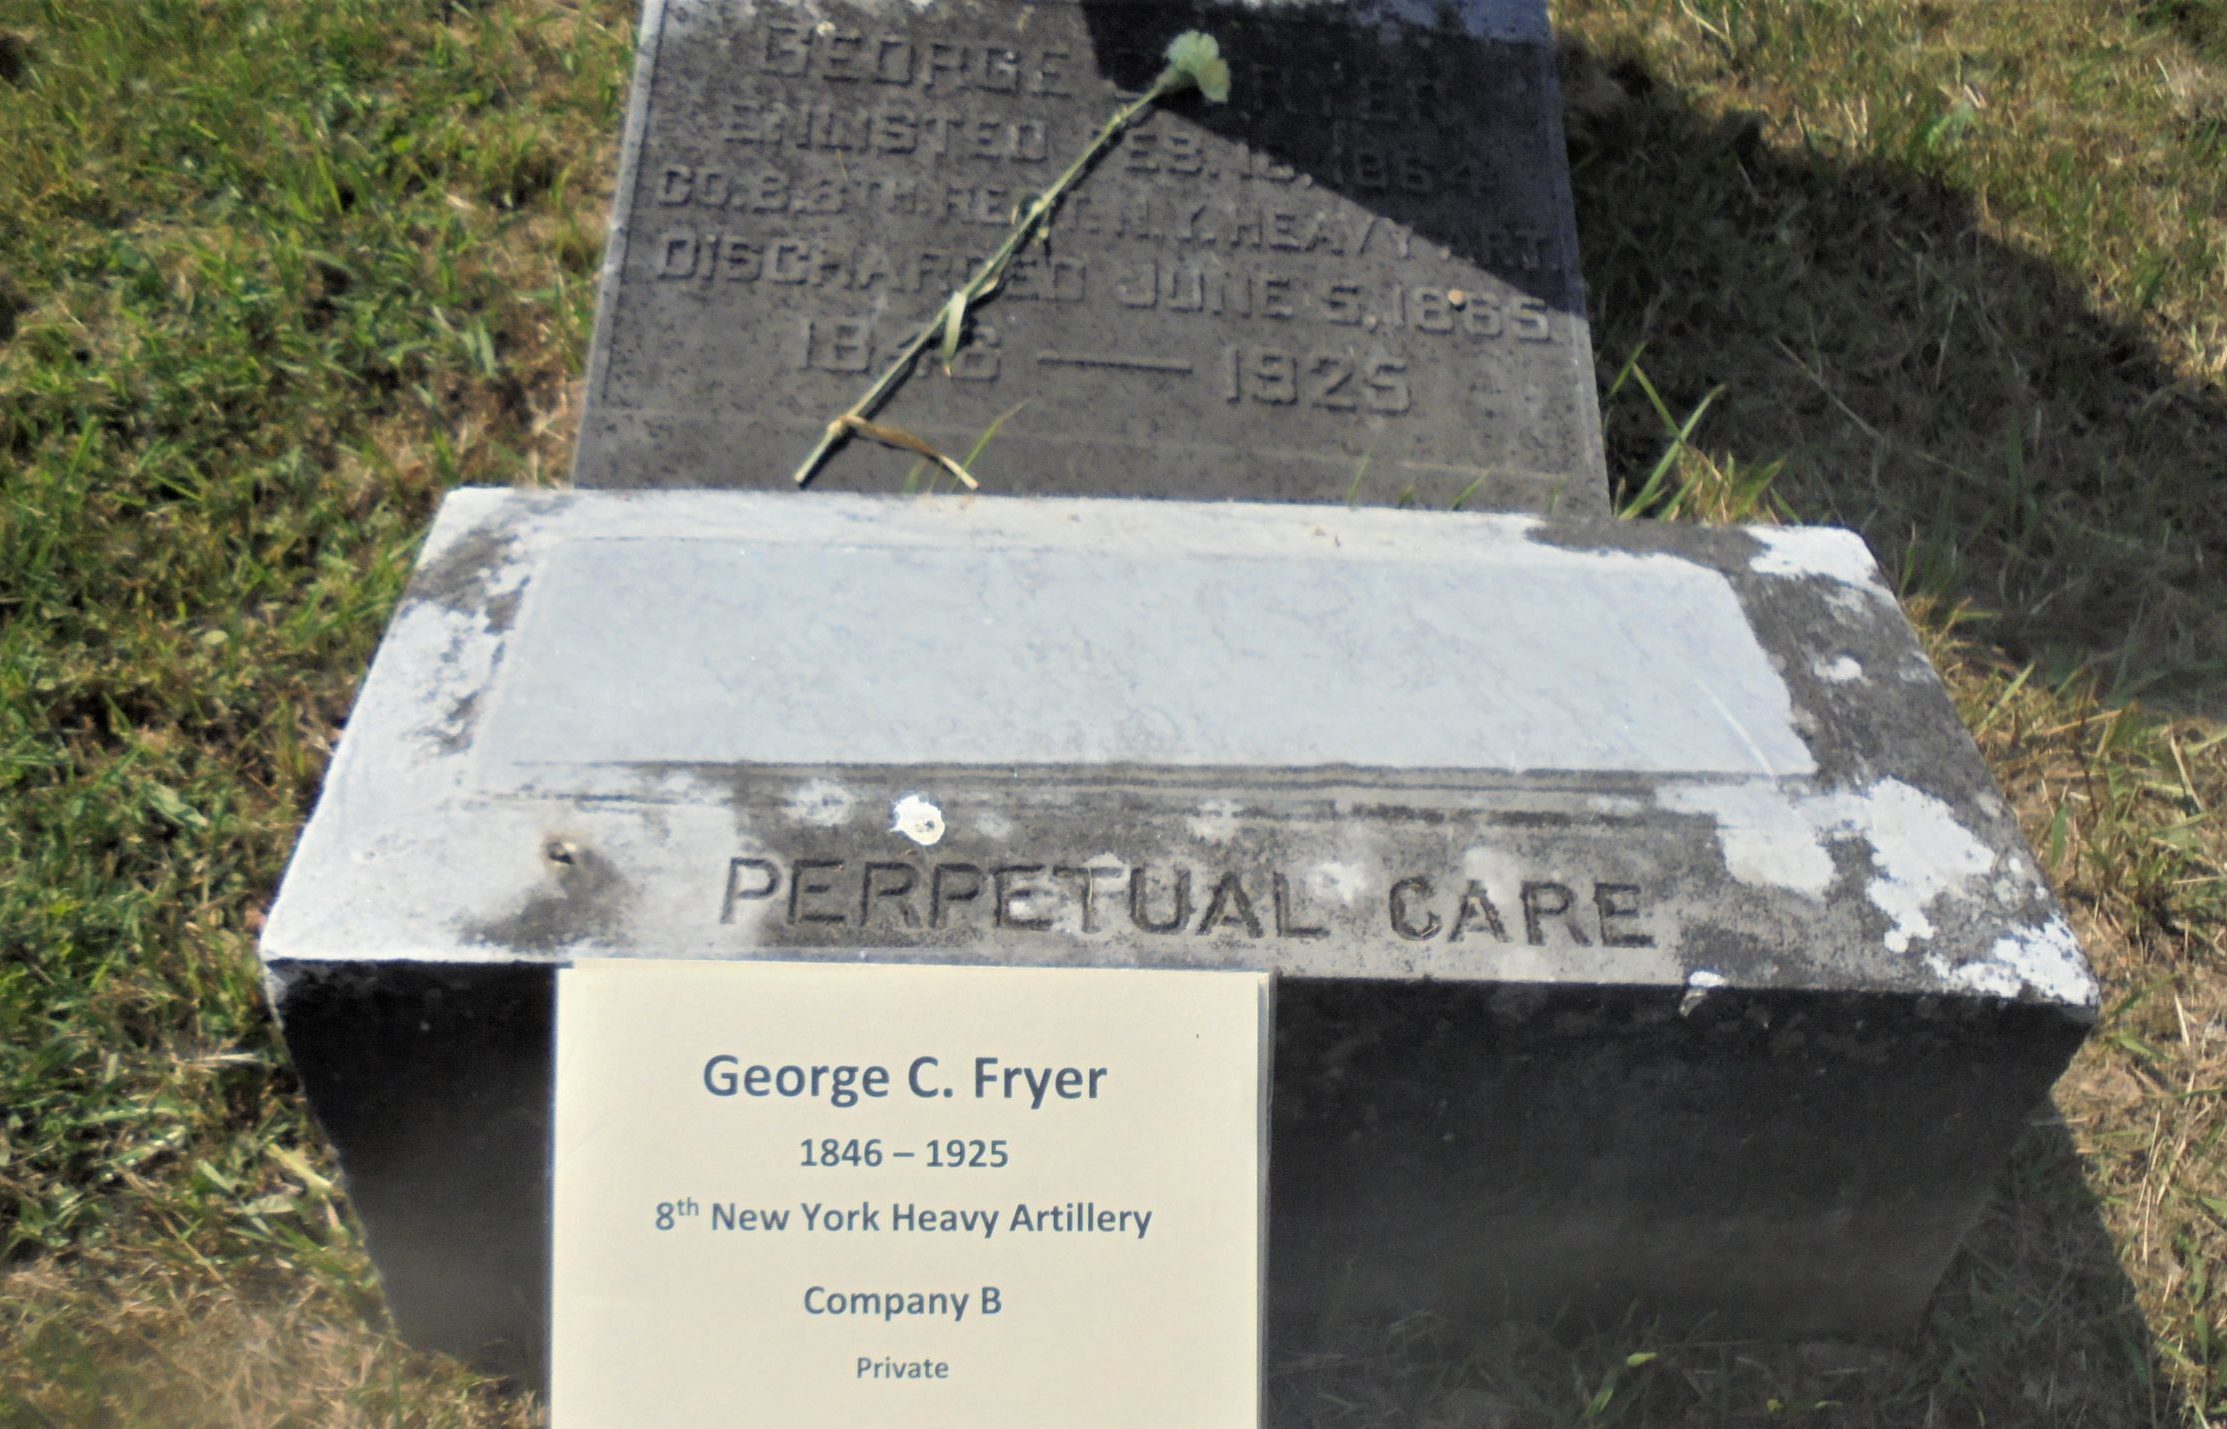 George C. Fryer